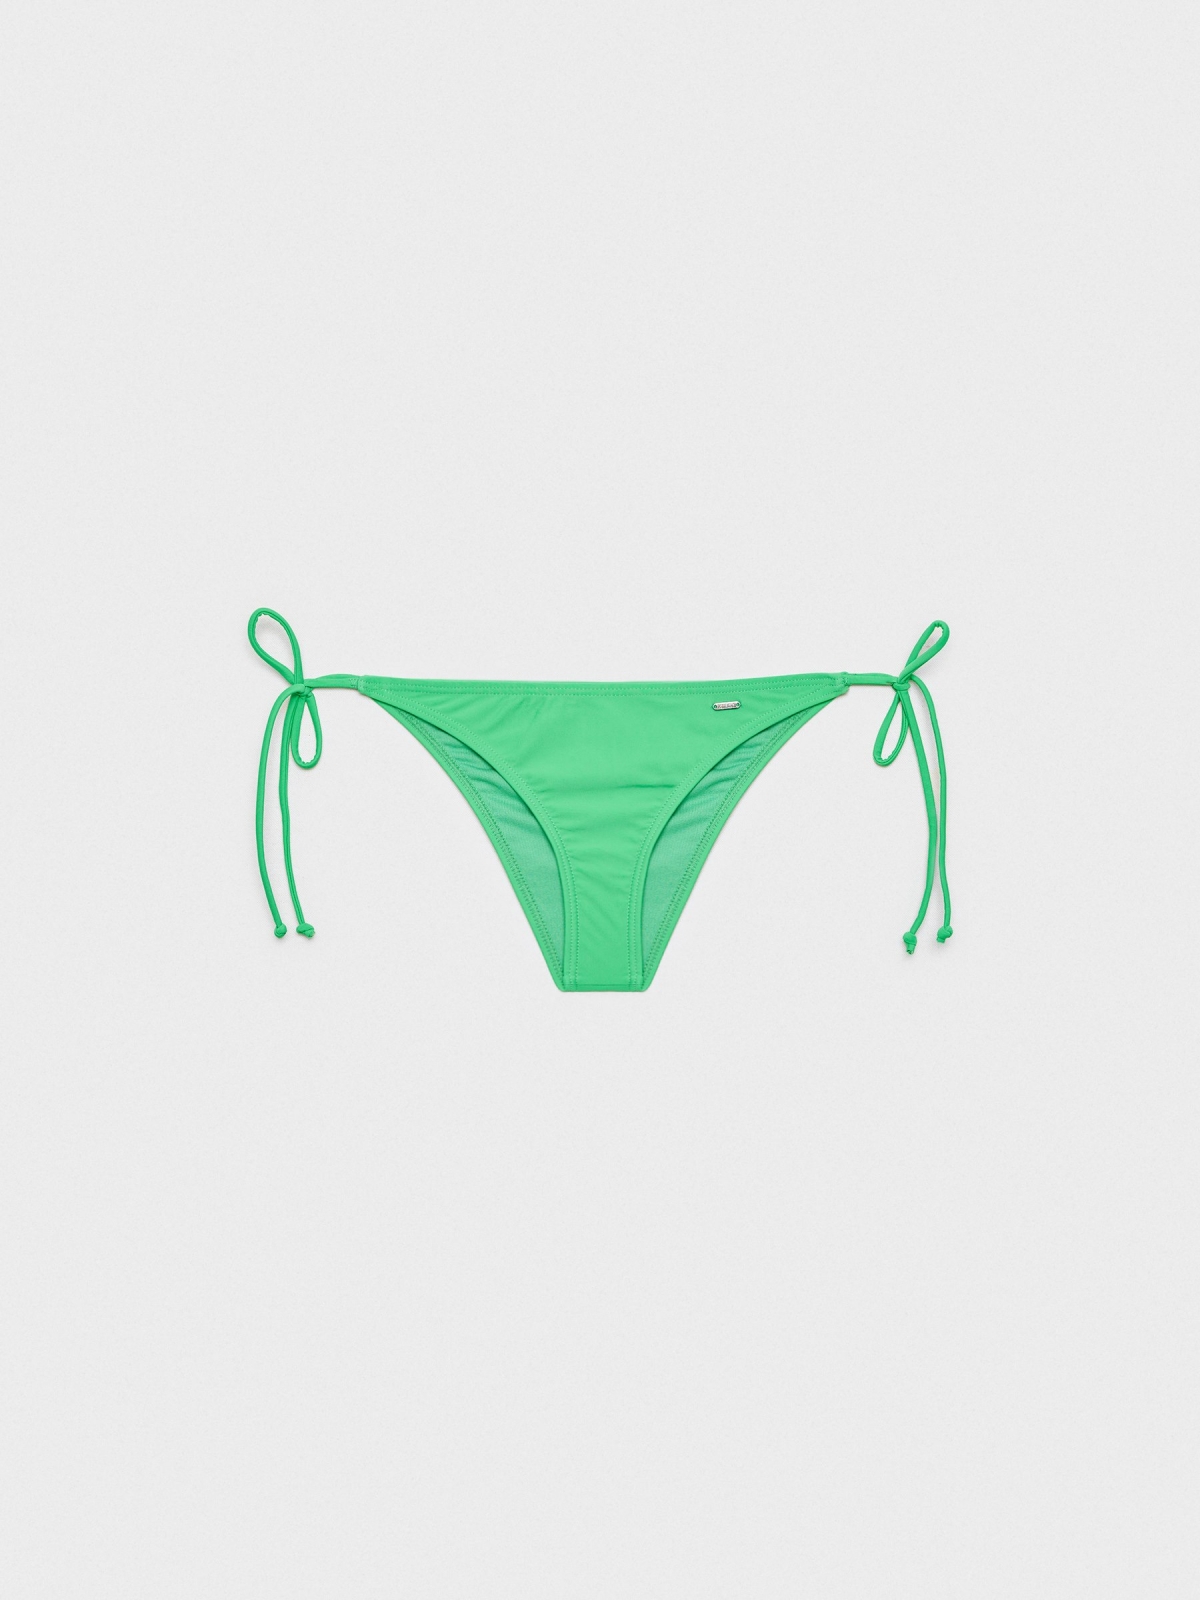  Braguita bikini anudada verde